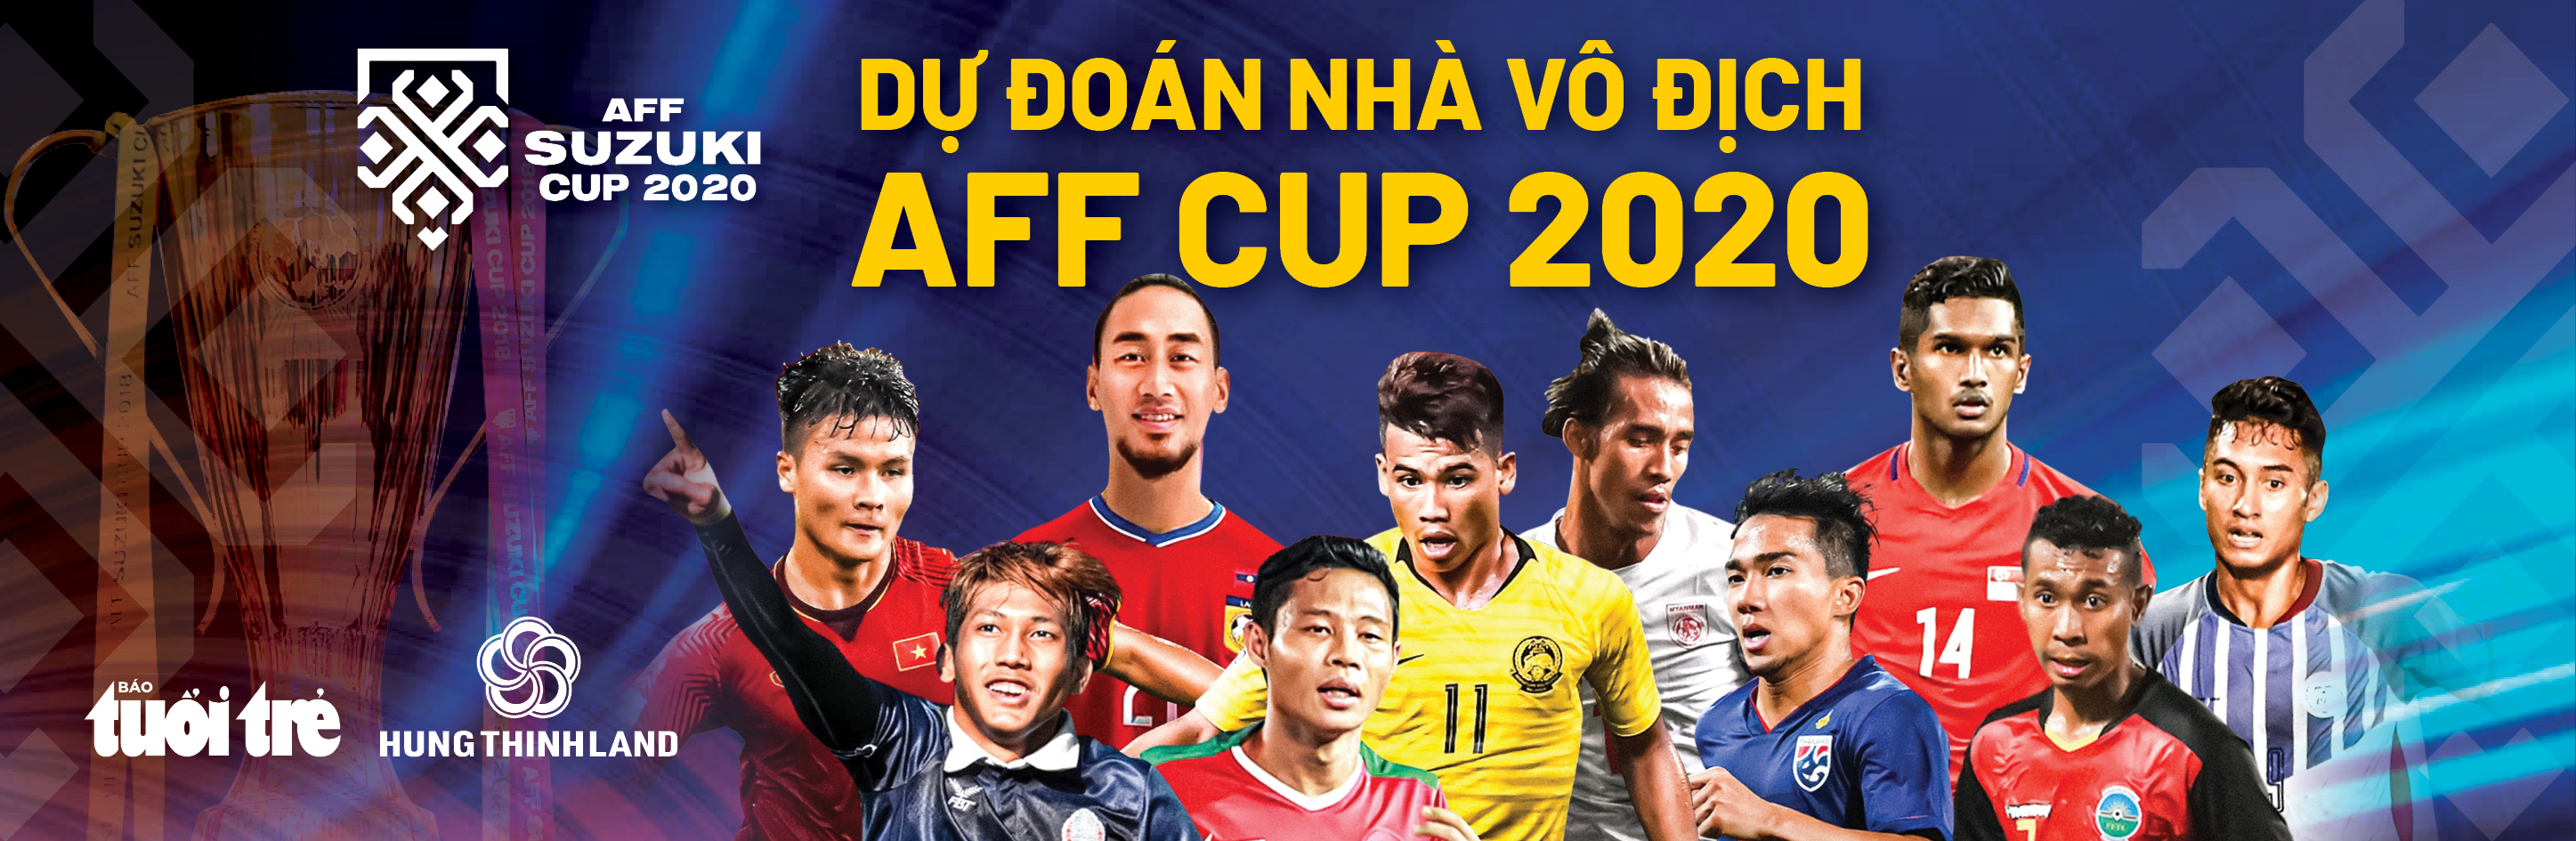 Lịch trực tiếp chung kết lượt về AFF Cup 2020: Thái Lan - Indonesia - Ảnh 2.